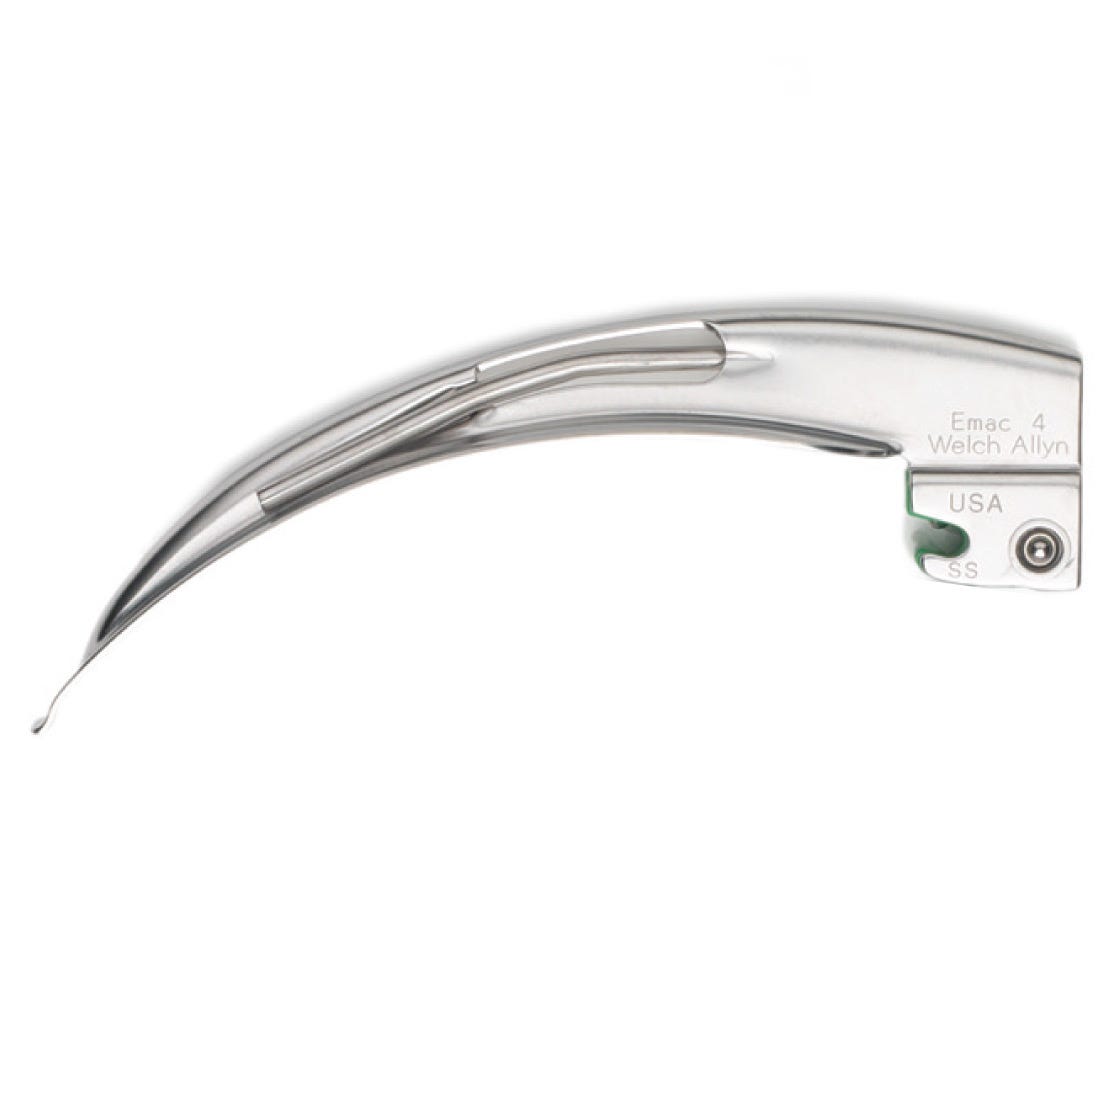 Welch Allyn Standard Fitting FiberOptic Laryngoscope Blades - Macintosh, Size 4, Fits Welch Allyn Fiberoptic Handle